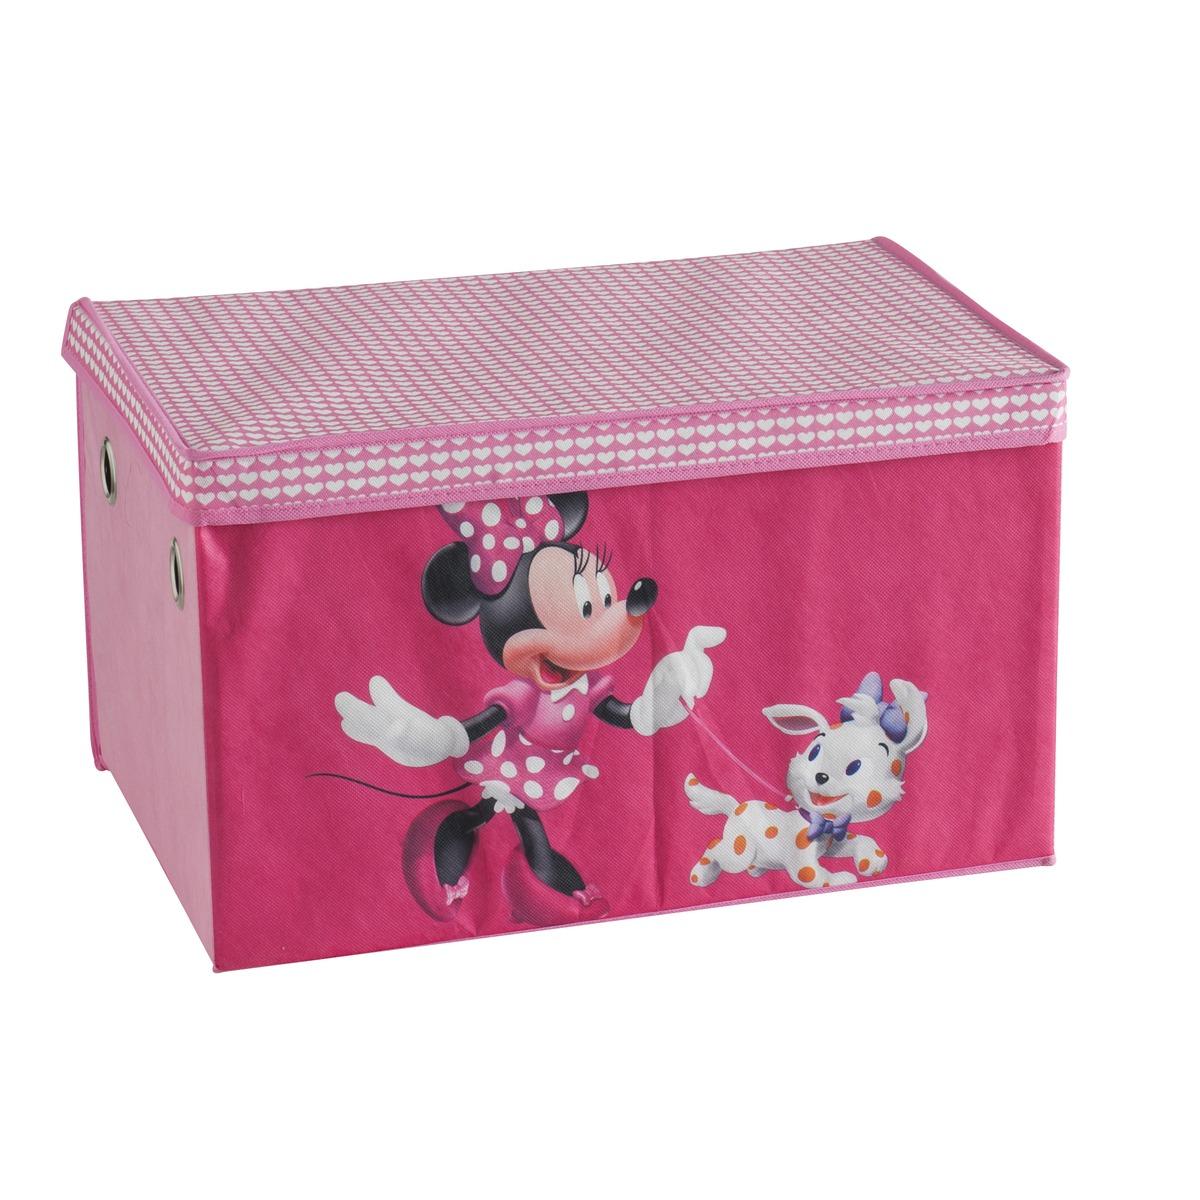 Coffre de rangement MINNIE Disney - 57 x 36 x 37,5 cm - Rose